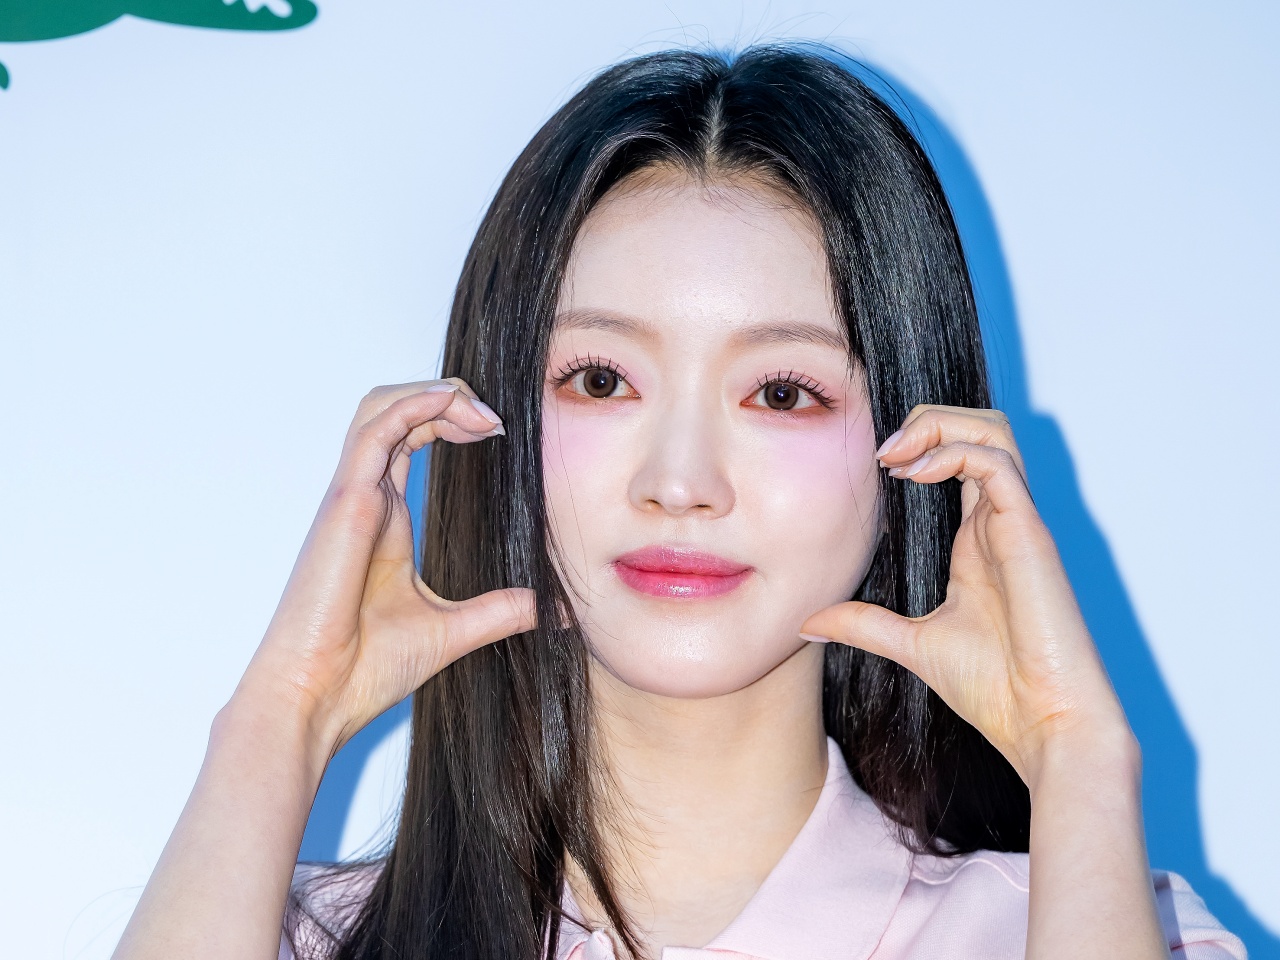 「イイ女感がすごい」“美しい顔100人”にも選ばれた韓国女性アイドル、真っ白なワキと二の腕があらわに…【PHOTO】